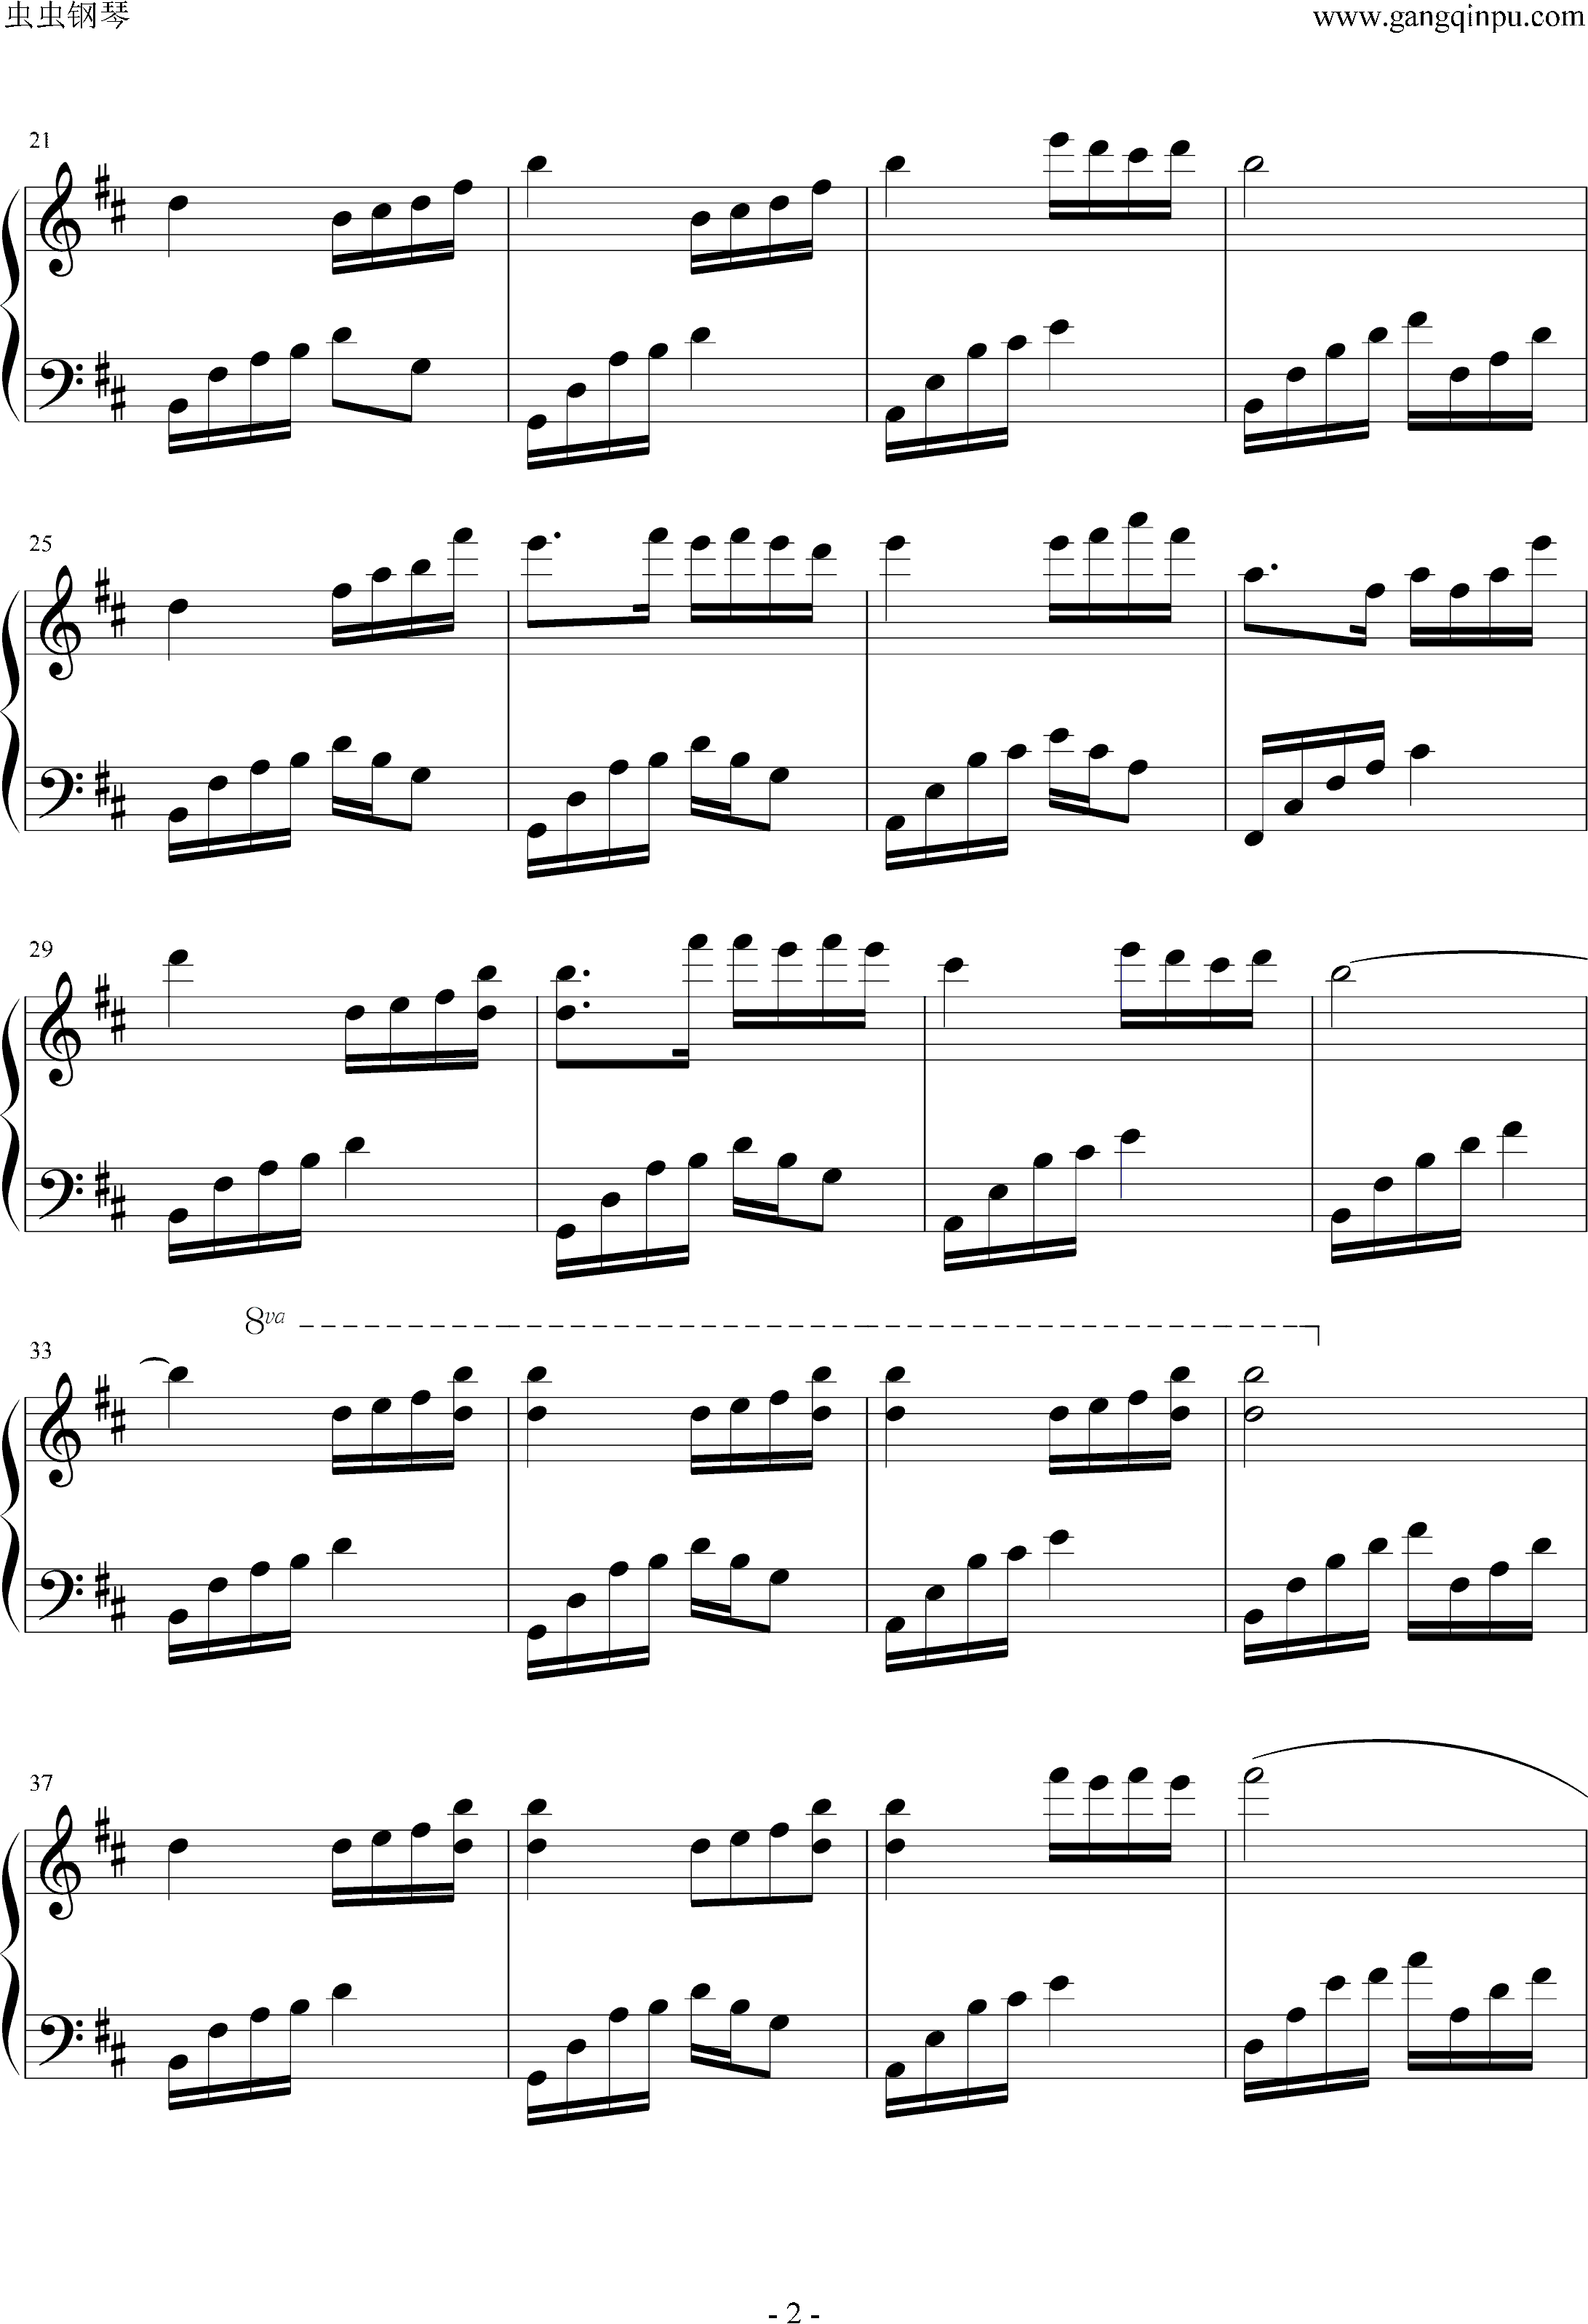 夜的钢琴曲（五）D大调完整版钢琴谱